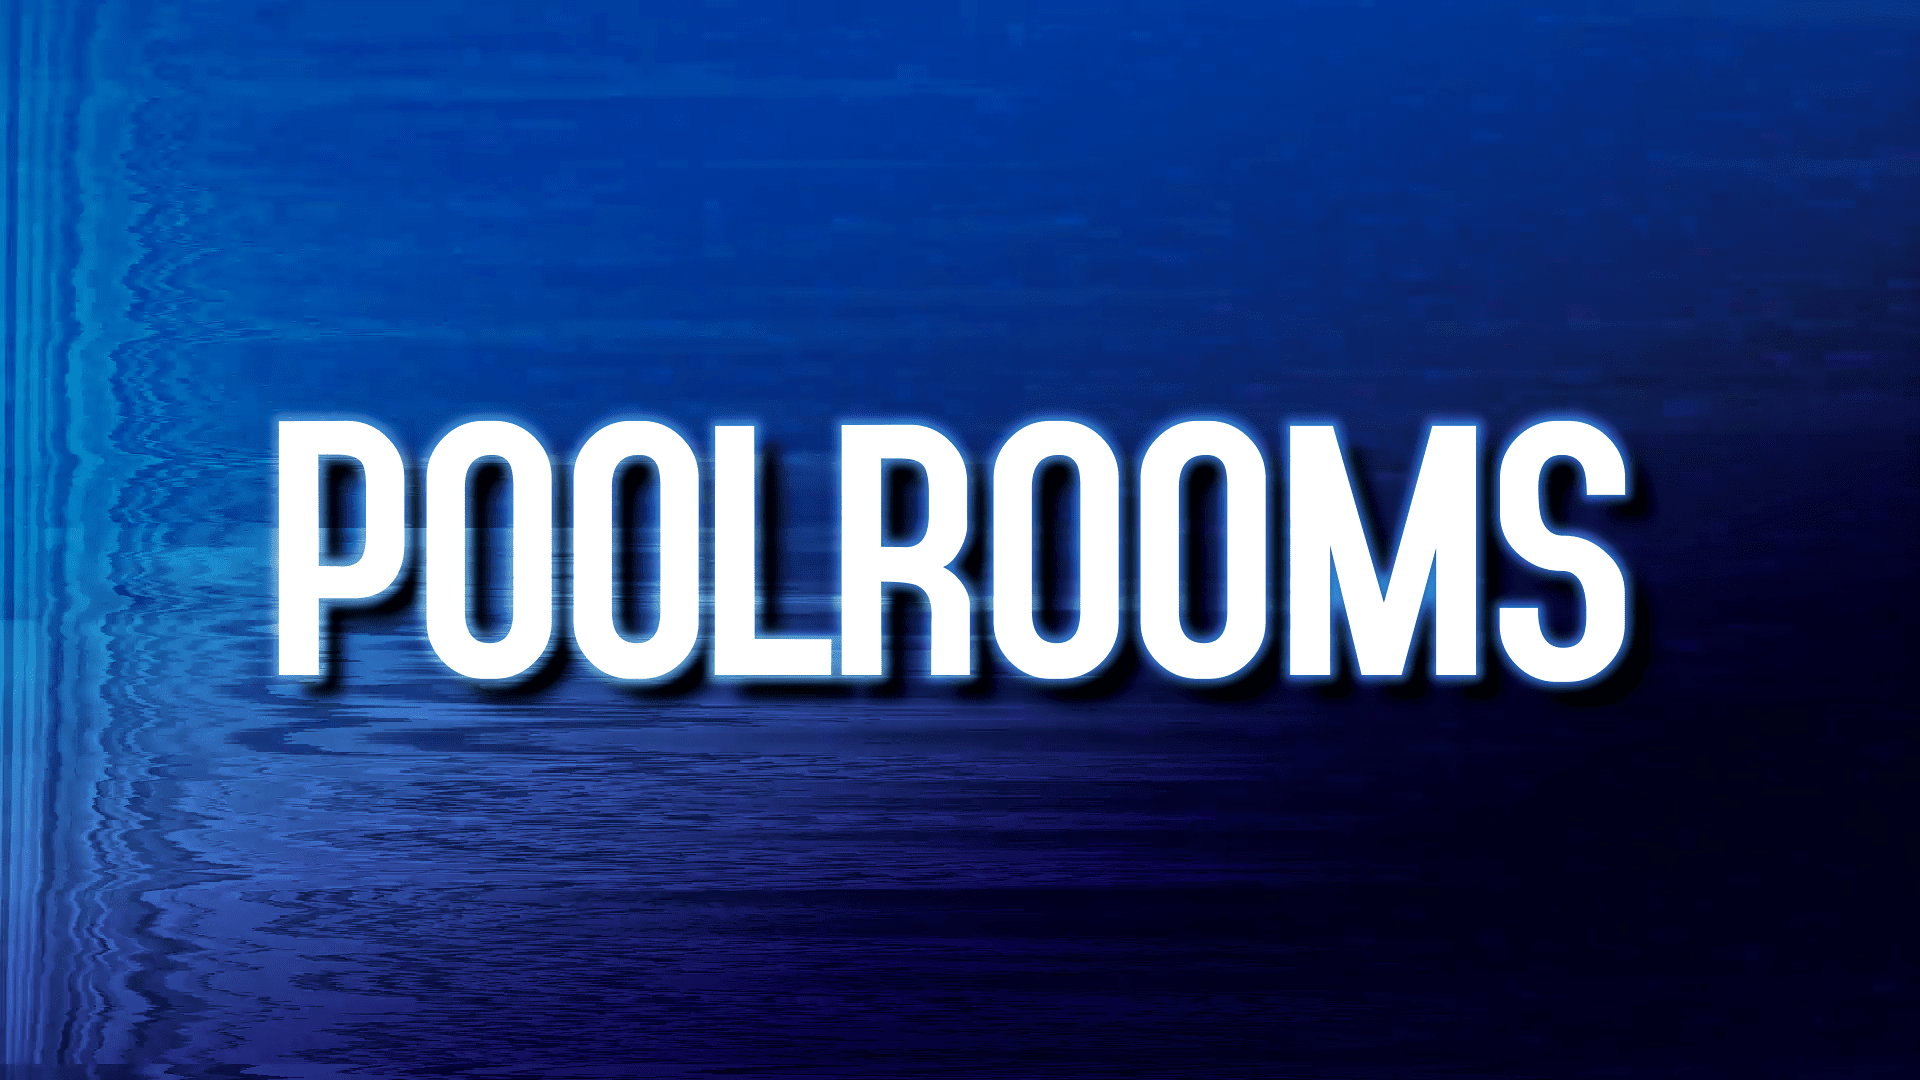 Poolrooms